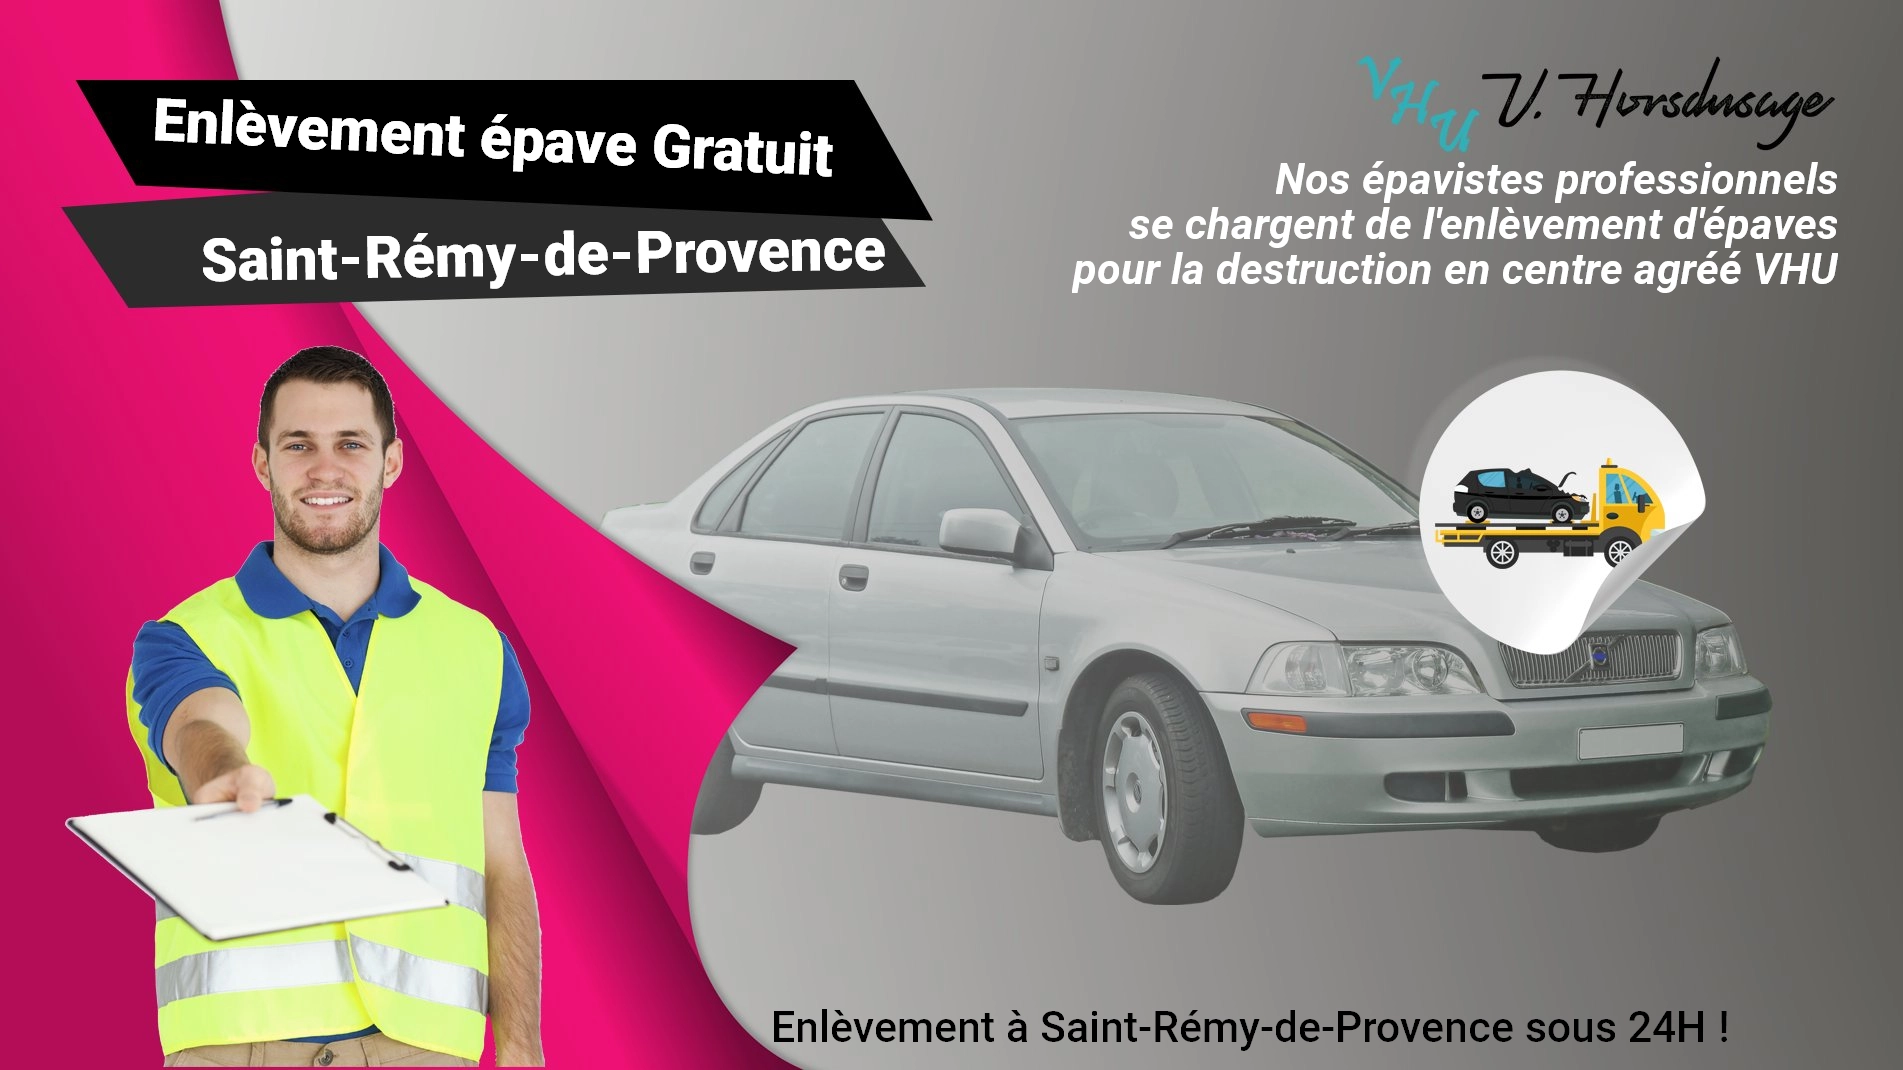 Pour un enlèvement gratuit à Saint-Rémy-de-Provence, contactez nos épavistes agréé VHU